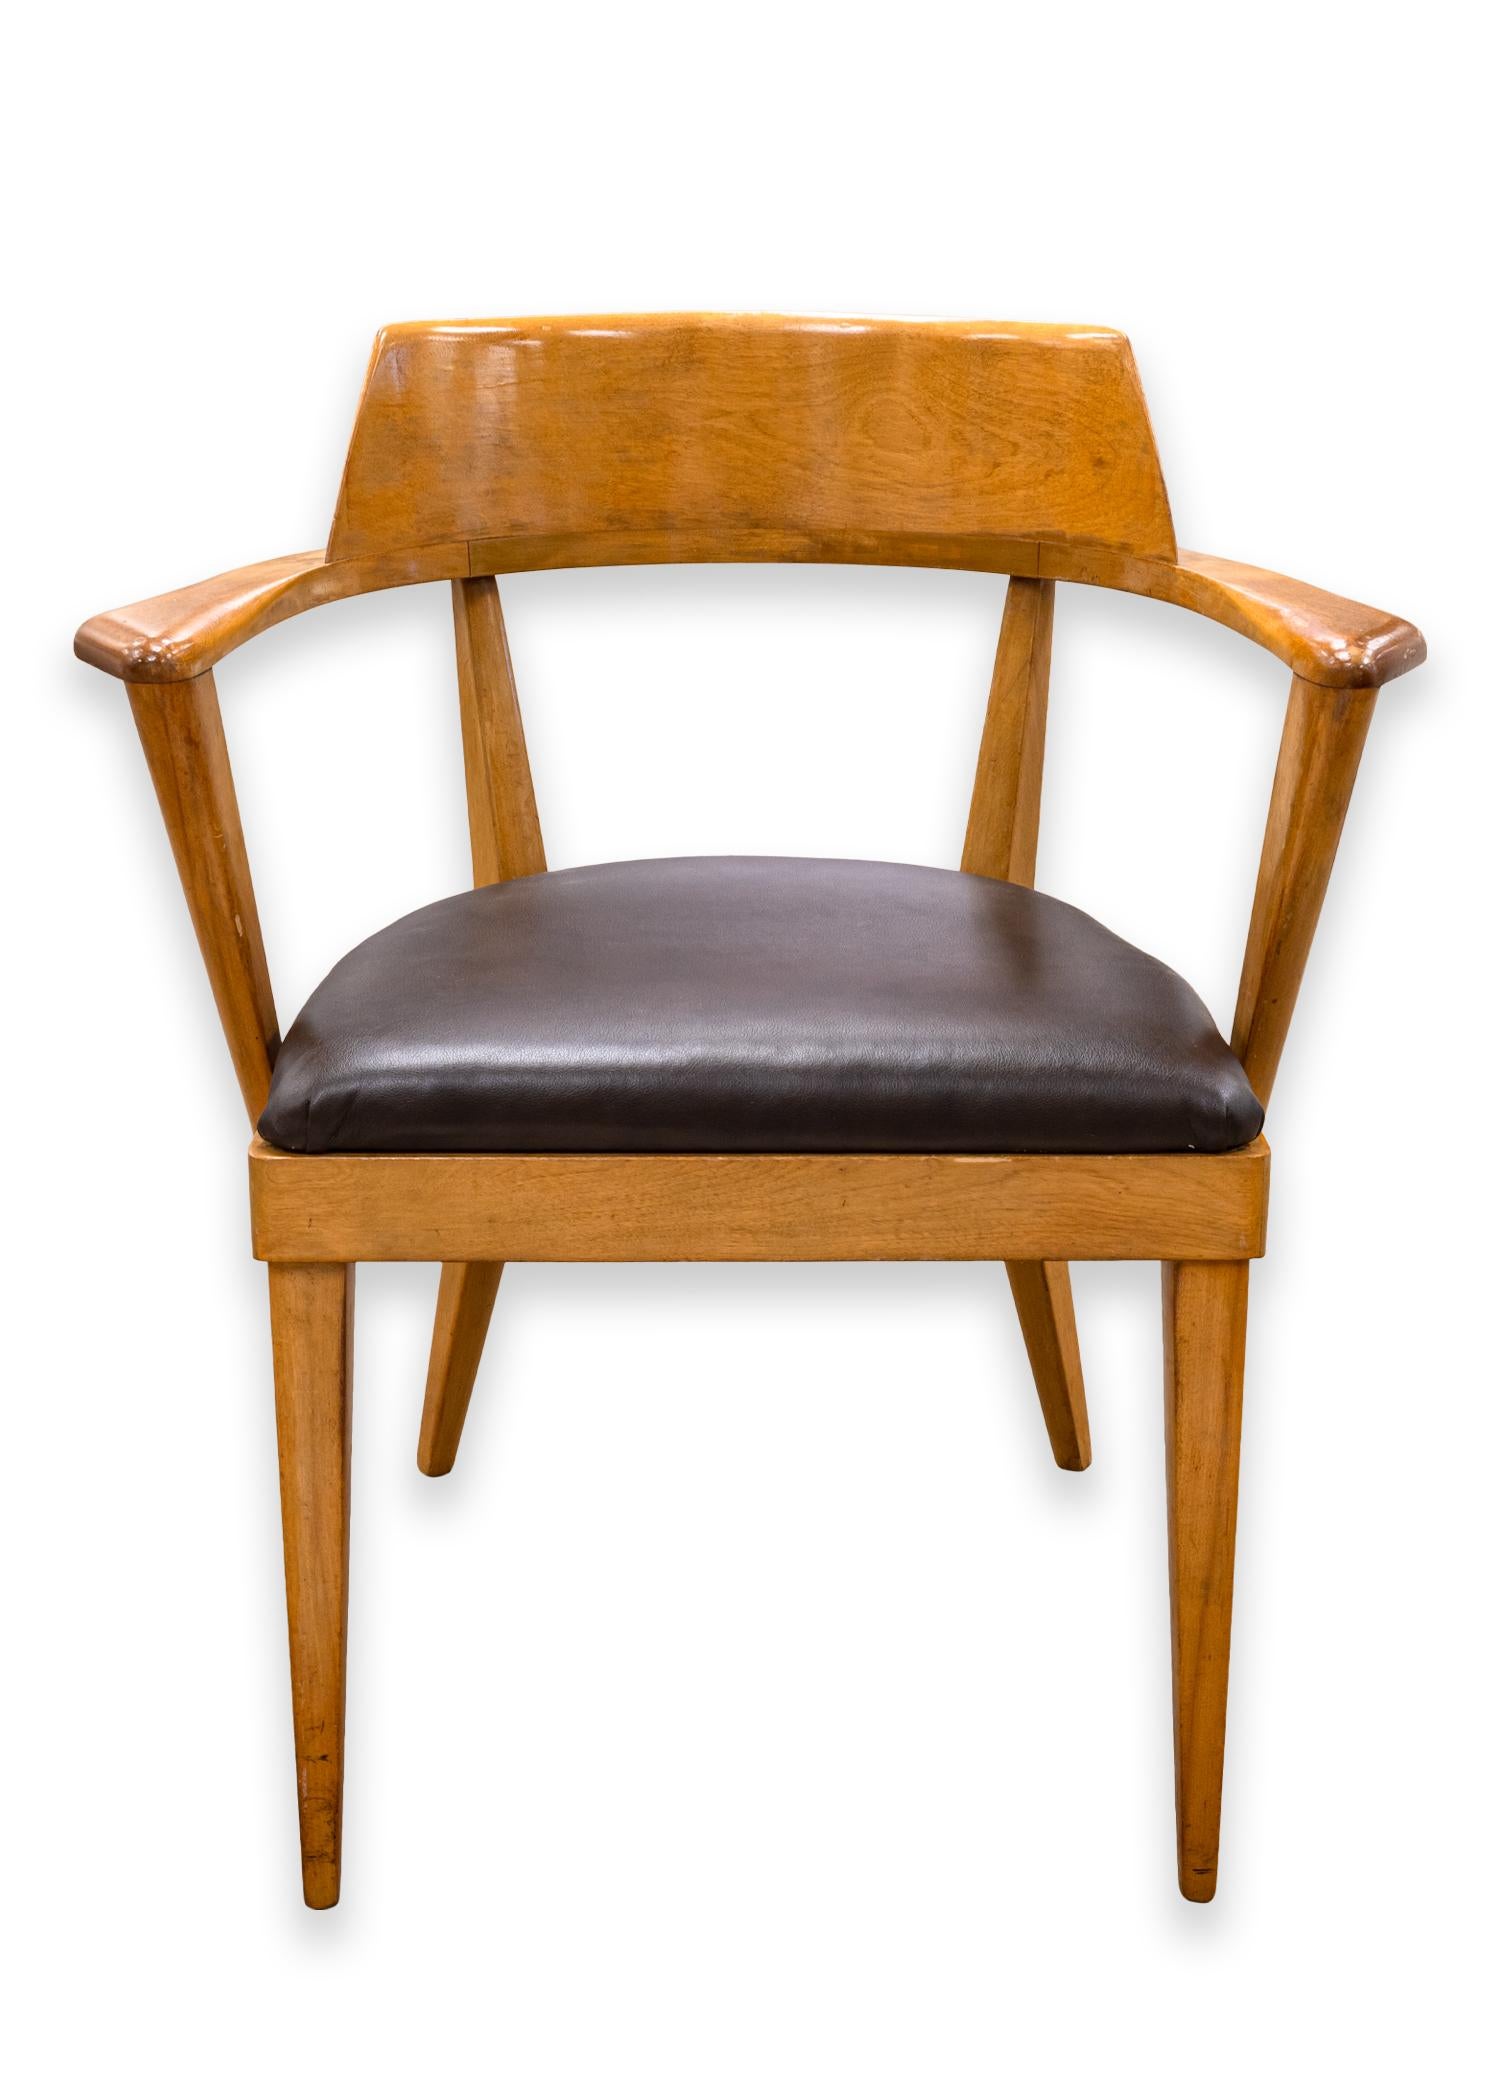 Ein Paar Heywood Wakefield Sessel. Eine sehr schöne Sesselgruppe, entworfen von Leo Jiranek und Ernest Herrmann für Heywood Wakefield. Diese Stühle sind aus Birke mit einer 